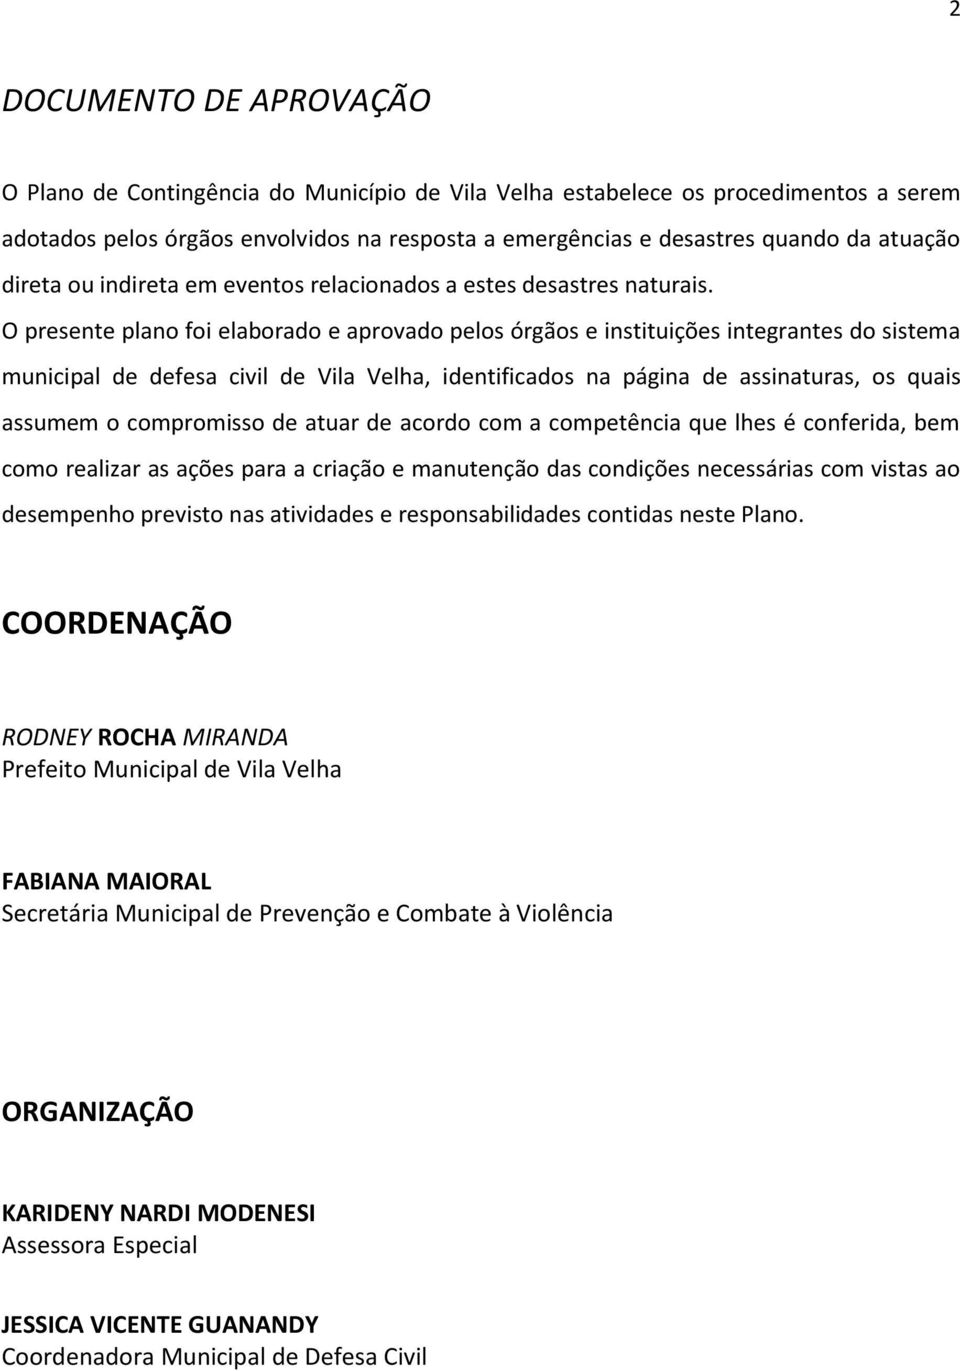 O presente plano foi elaborado e aprovado pelos órgãos e instituições integrantes do sistema municipal de defesa civil de Vila Velha, identificados na página de assinaturas, os quais assumem o